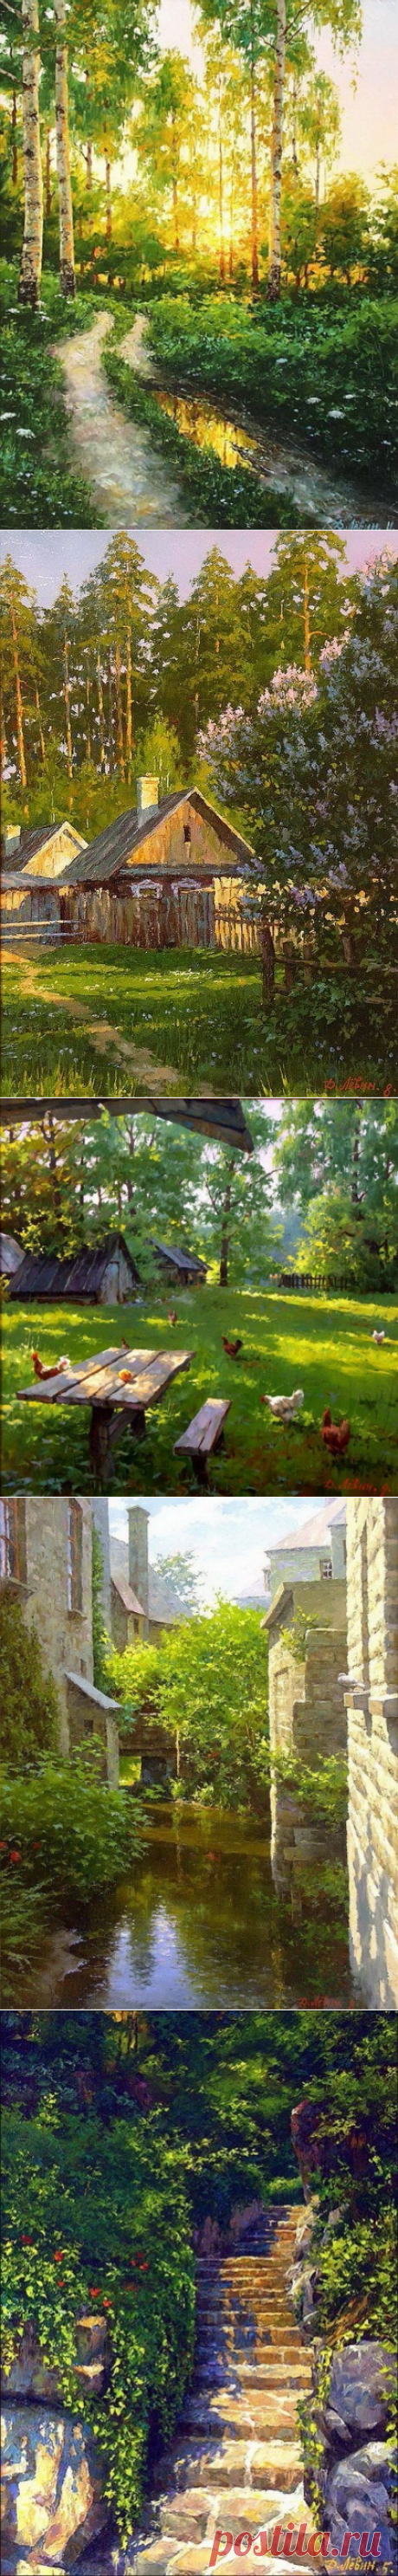 Природа России в картинах Дмитрия Левина - Путешествуем вместе